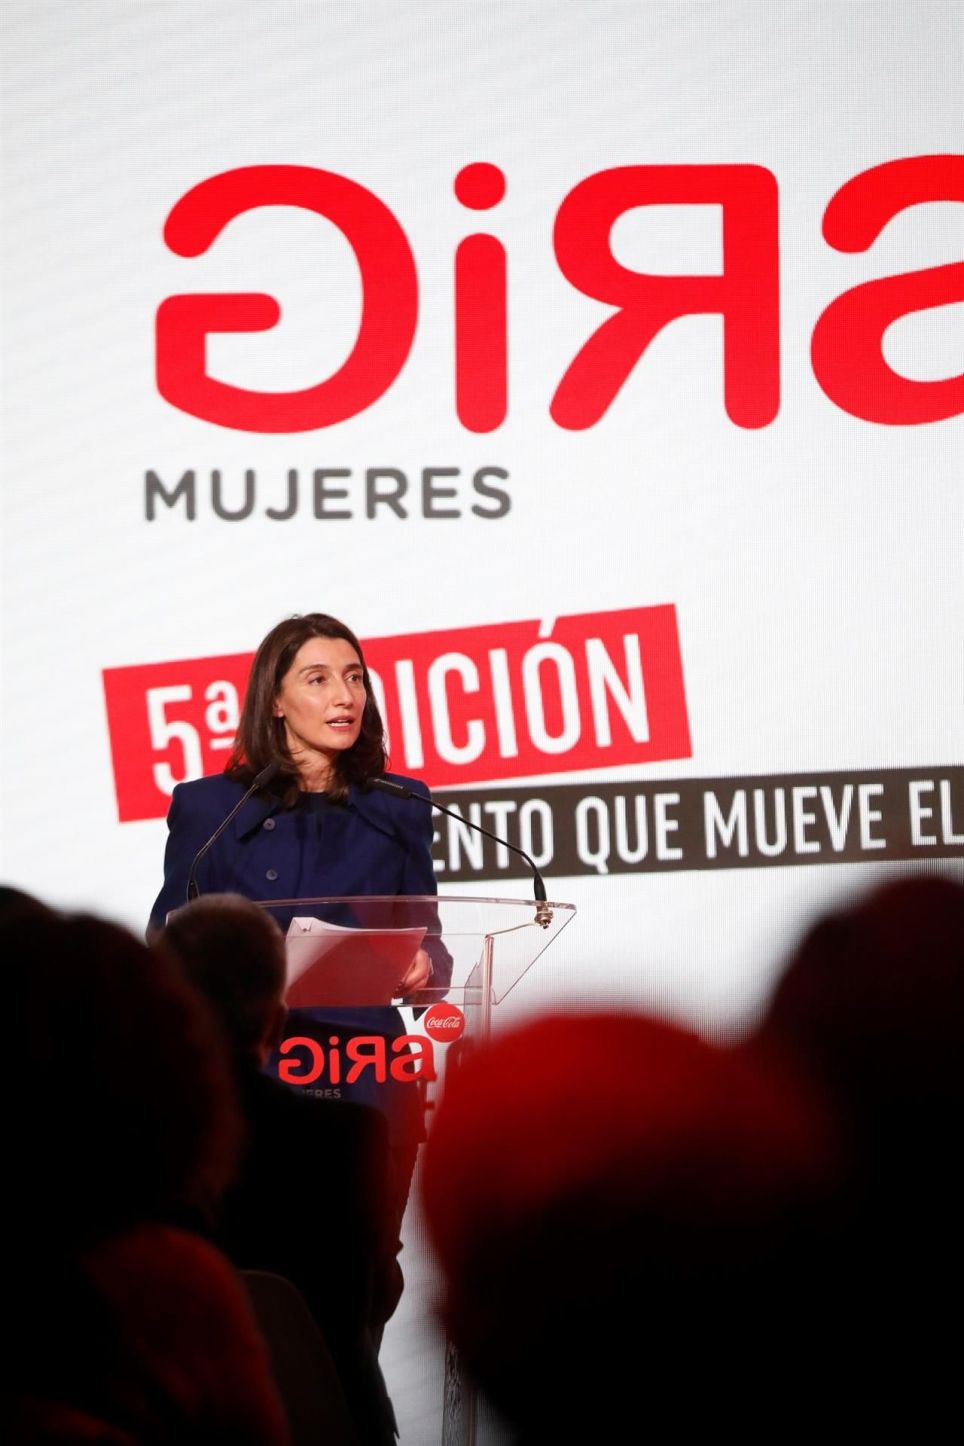 MADRID, 17/11/2021.- La ministra de Justicia, Pilar Llop, participa en la entrega de la quinta edición de los Premios "GIRA", que entrega Coca Cola a proyectos de mujeres emprendedoras, este martes en Madrid. EFE/David Fernández
